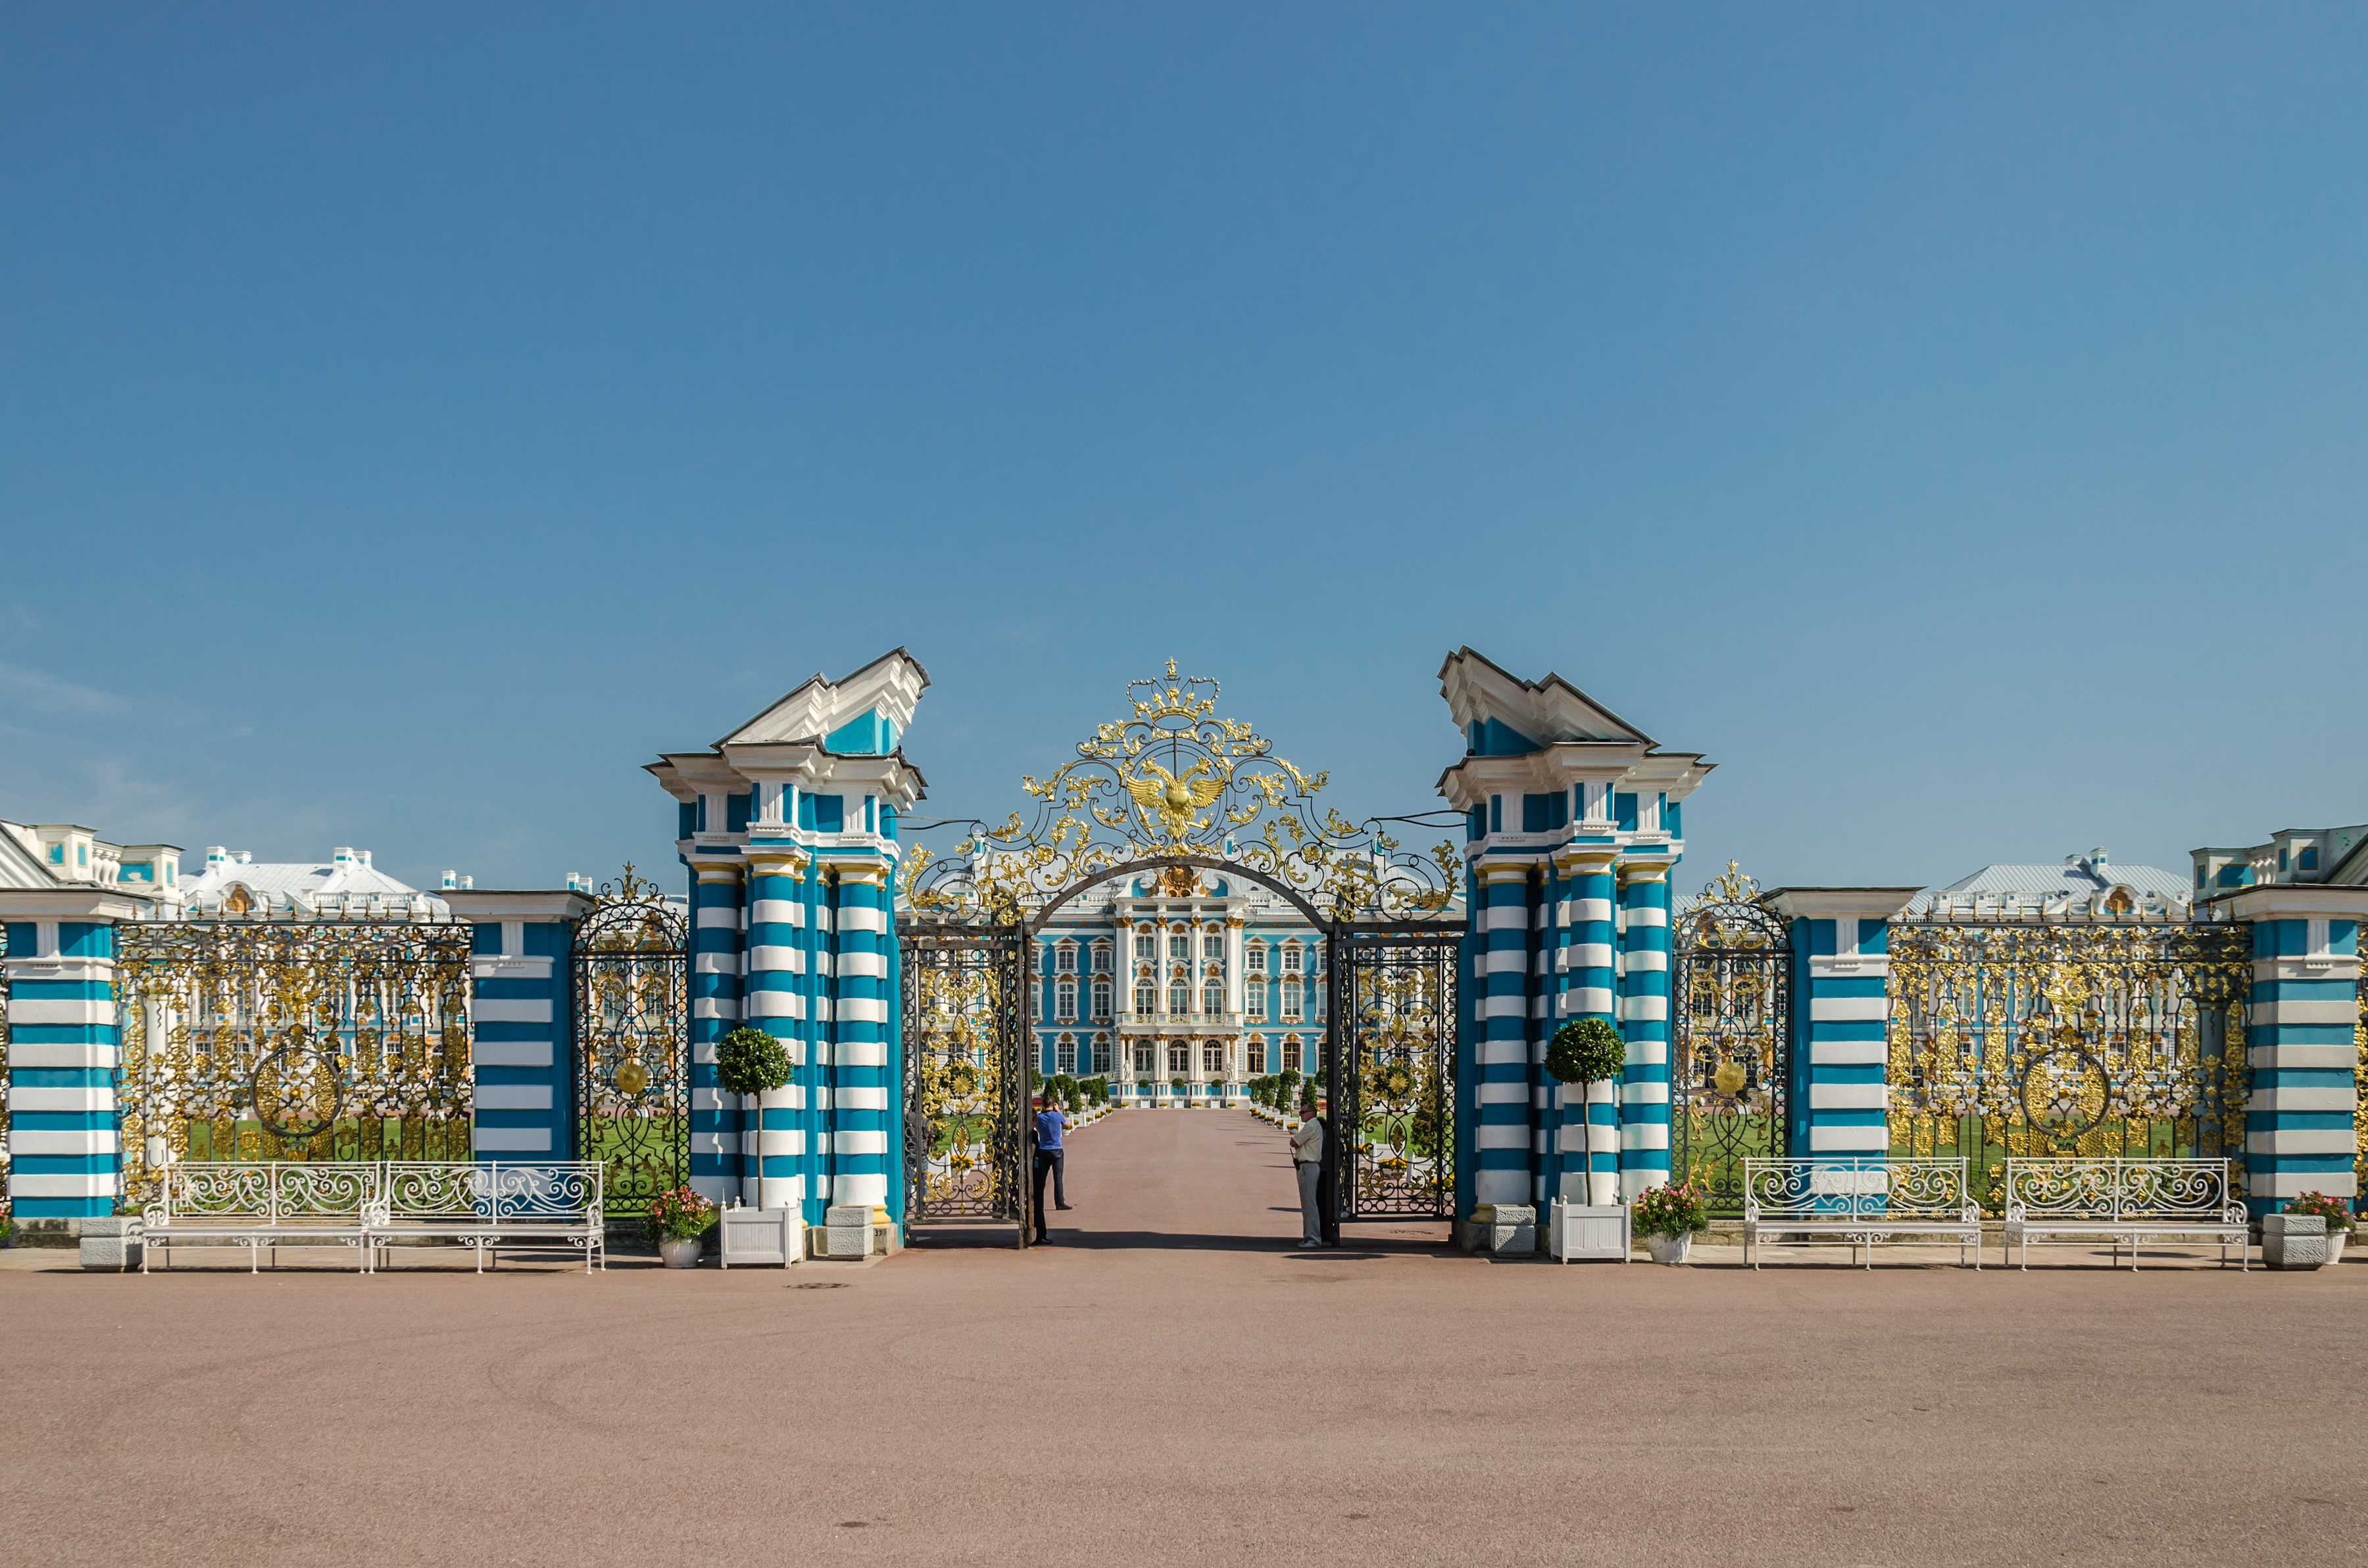 Catherine Palace in Tsarskoe Selo, Golden Gates